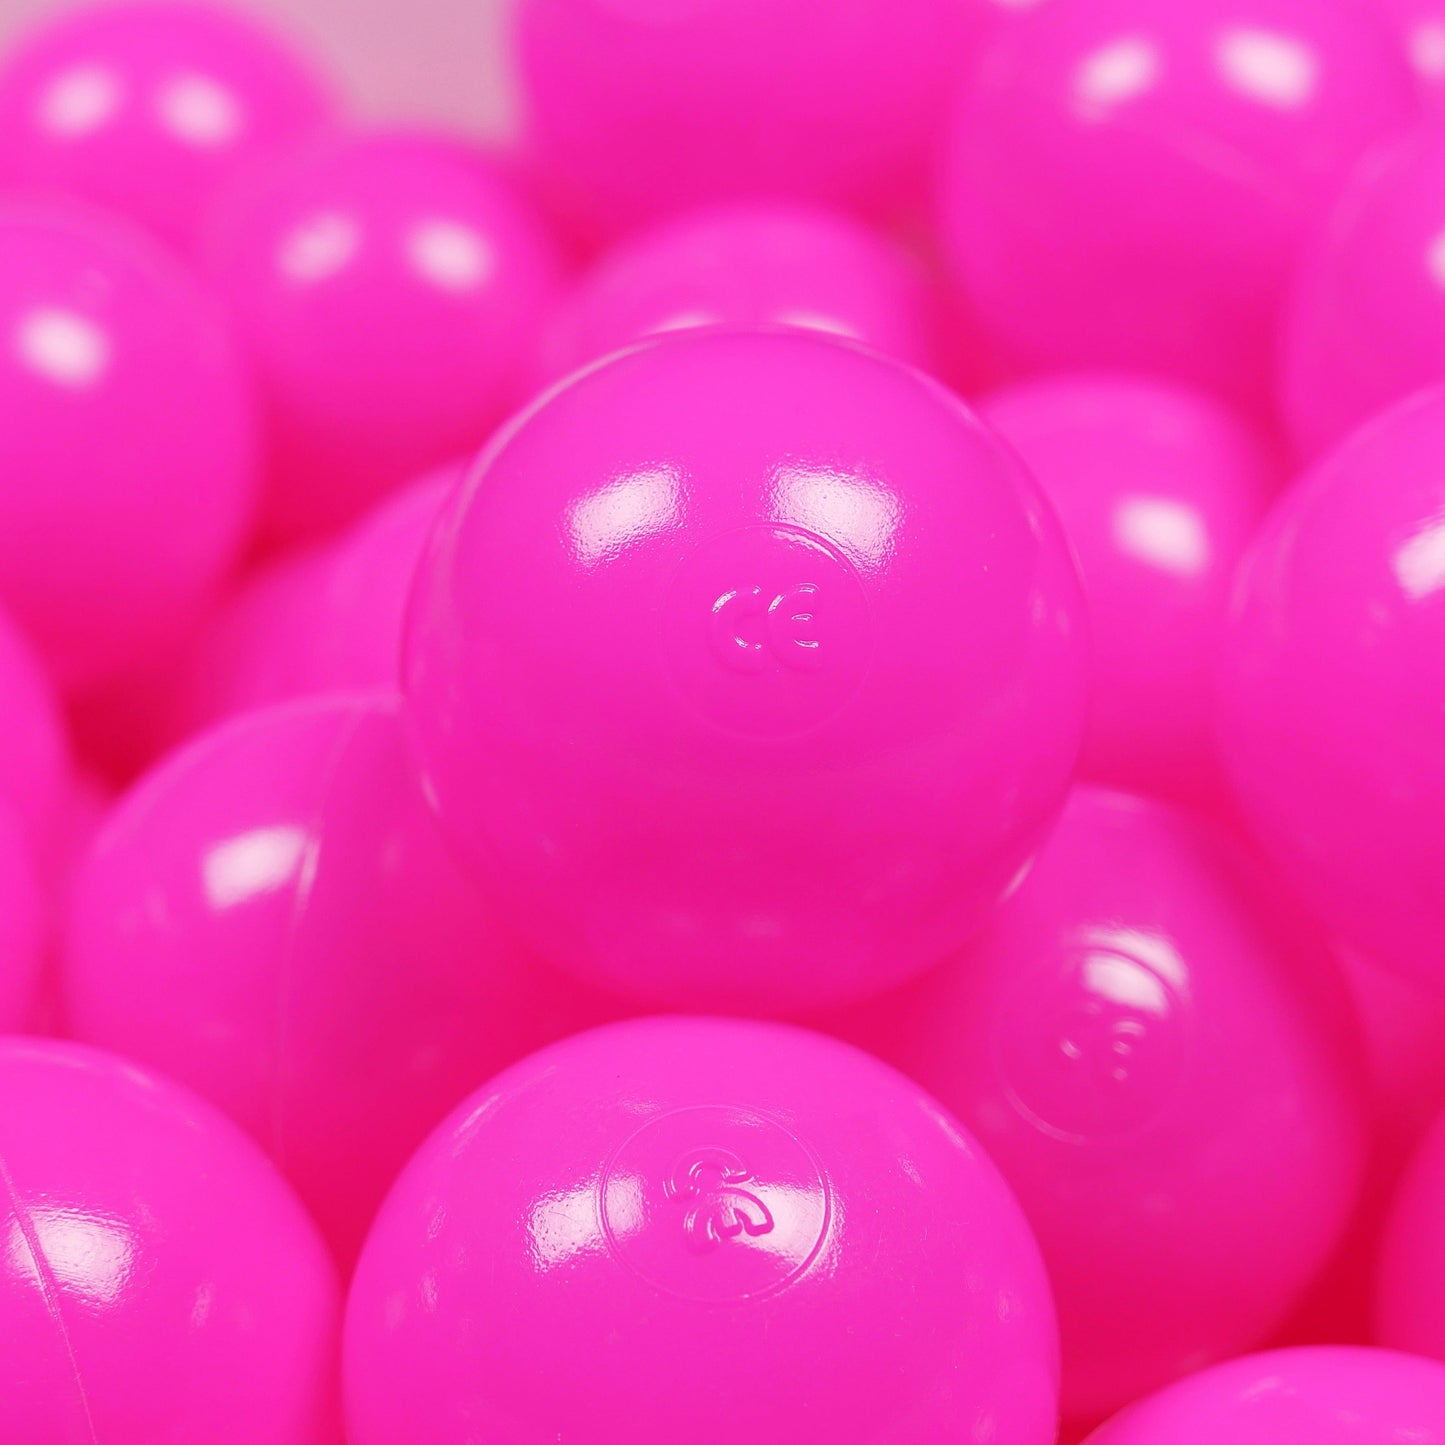 Balles de jeu ø7cm 150 pièces rose